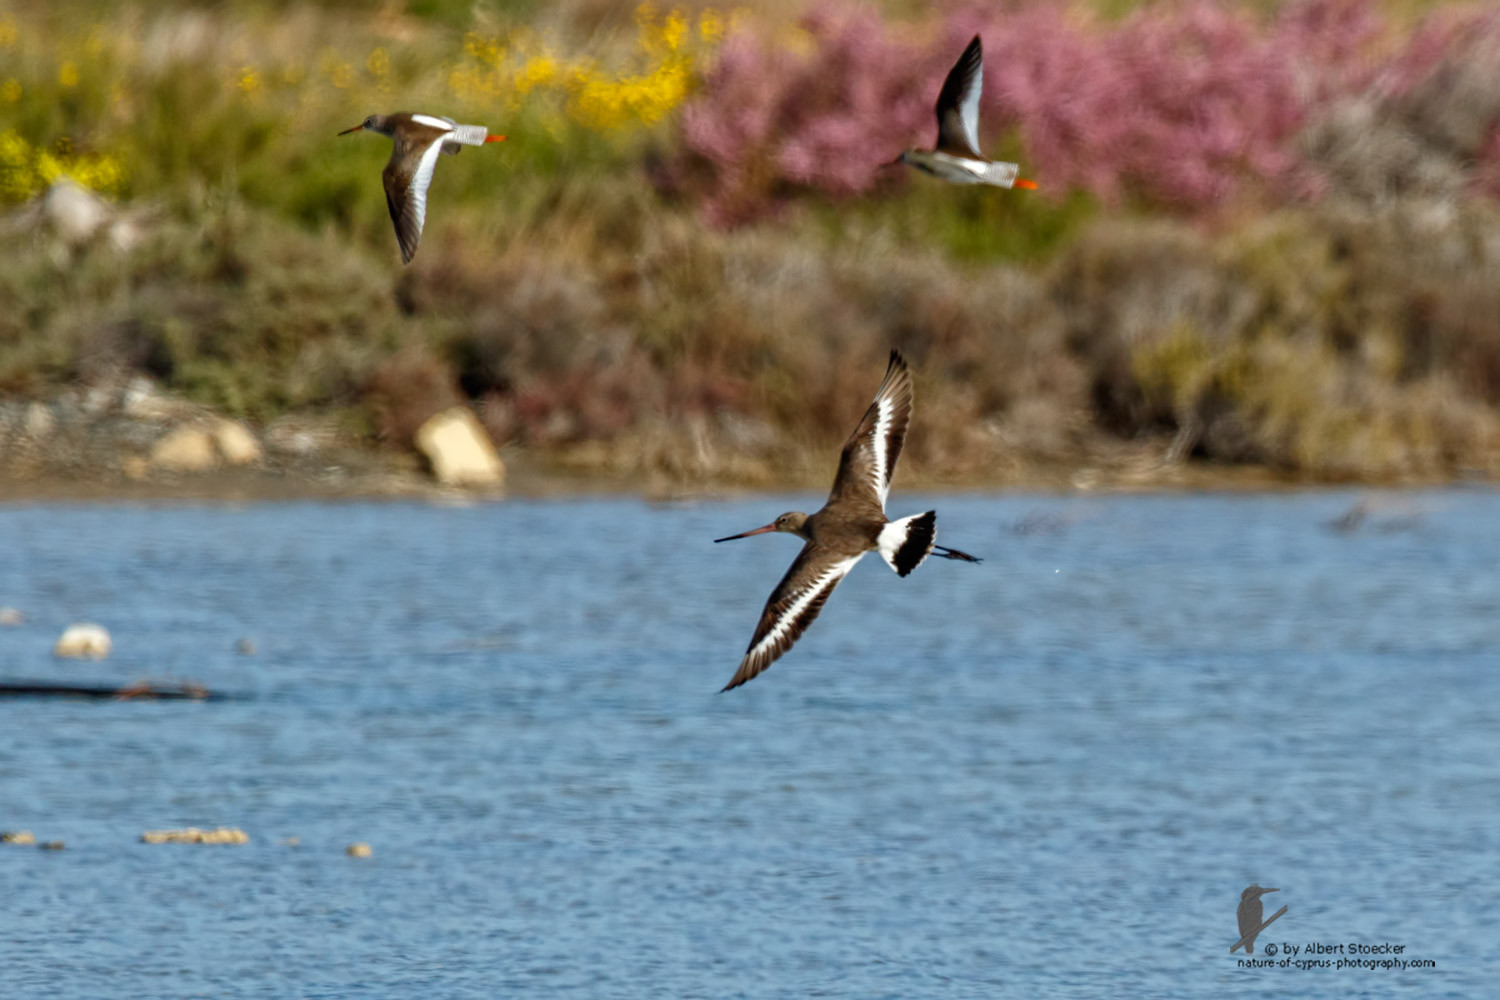 Limosa limosa - Black-tailed Godwit - Uferschnepfe, Cyprus, Zakai Marsh, March 2016